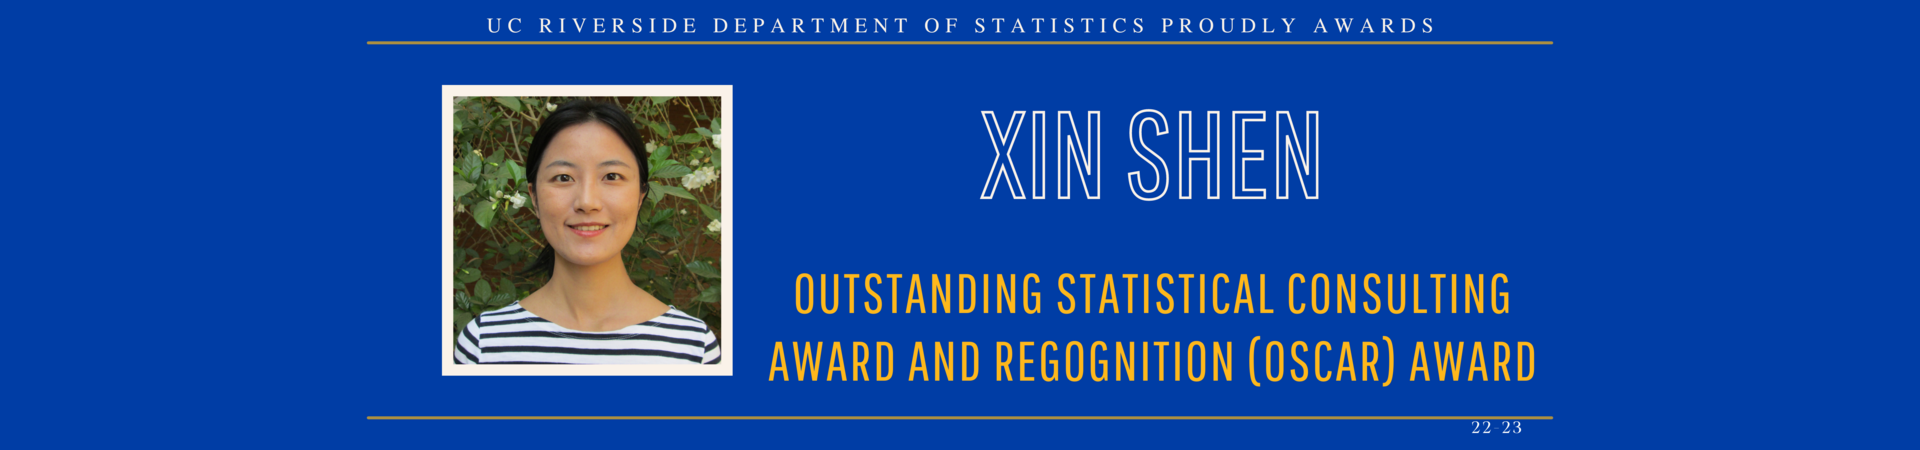 Xin Shen awarded OSCAR award